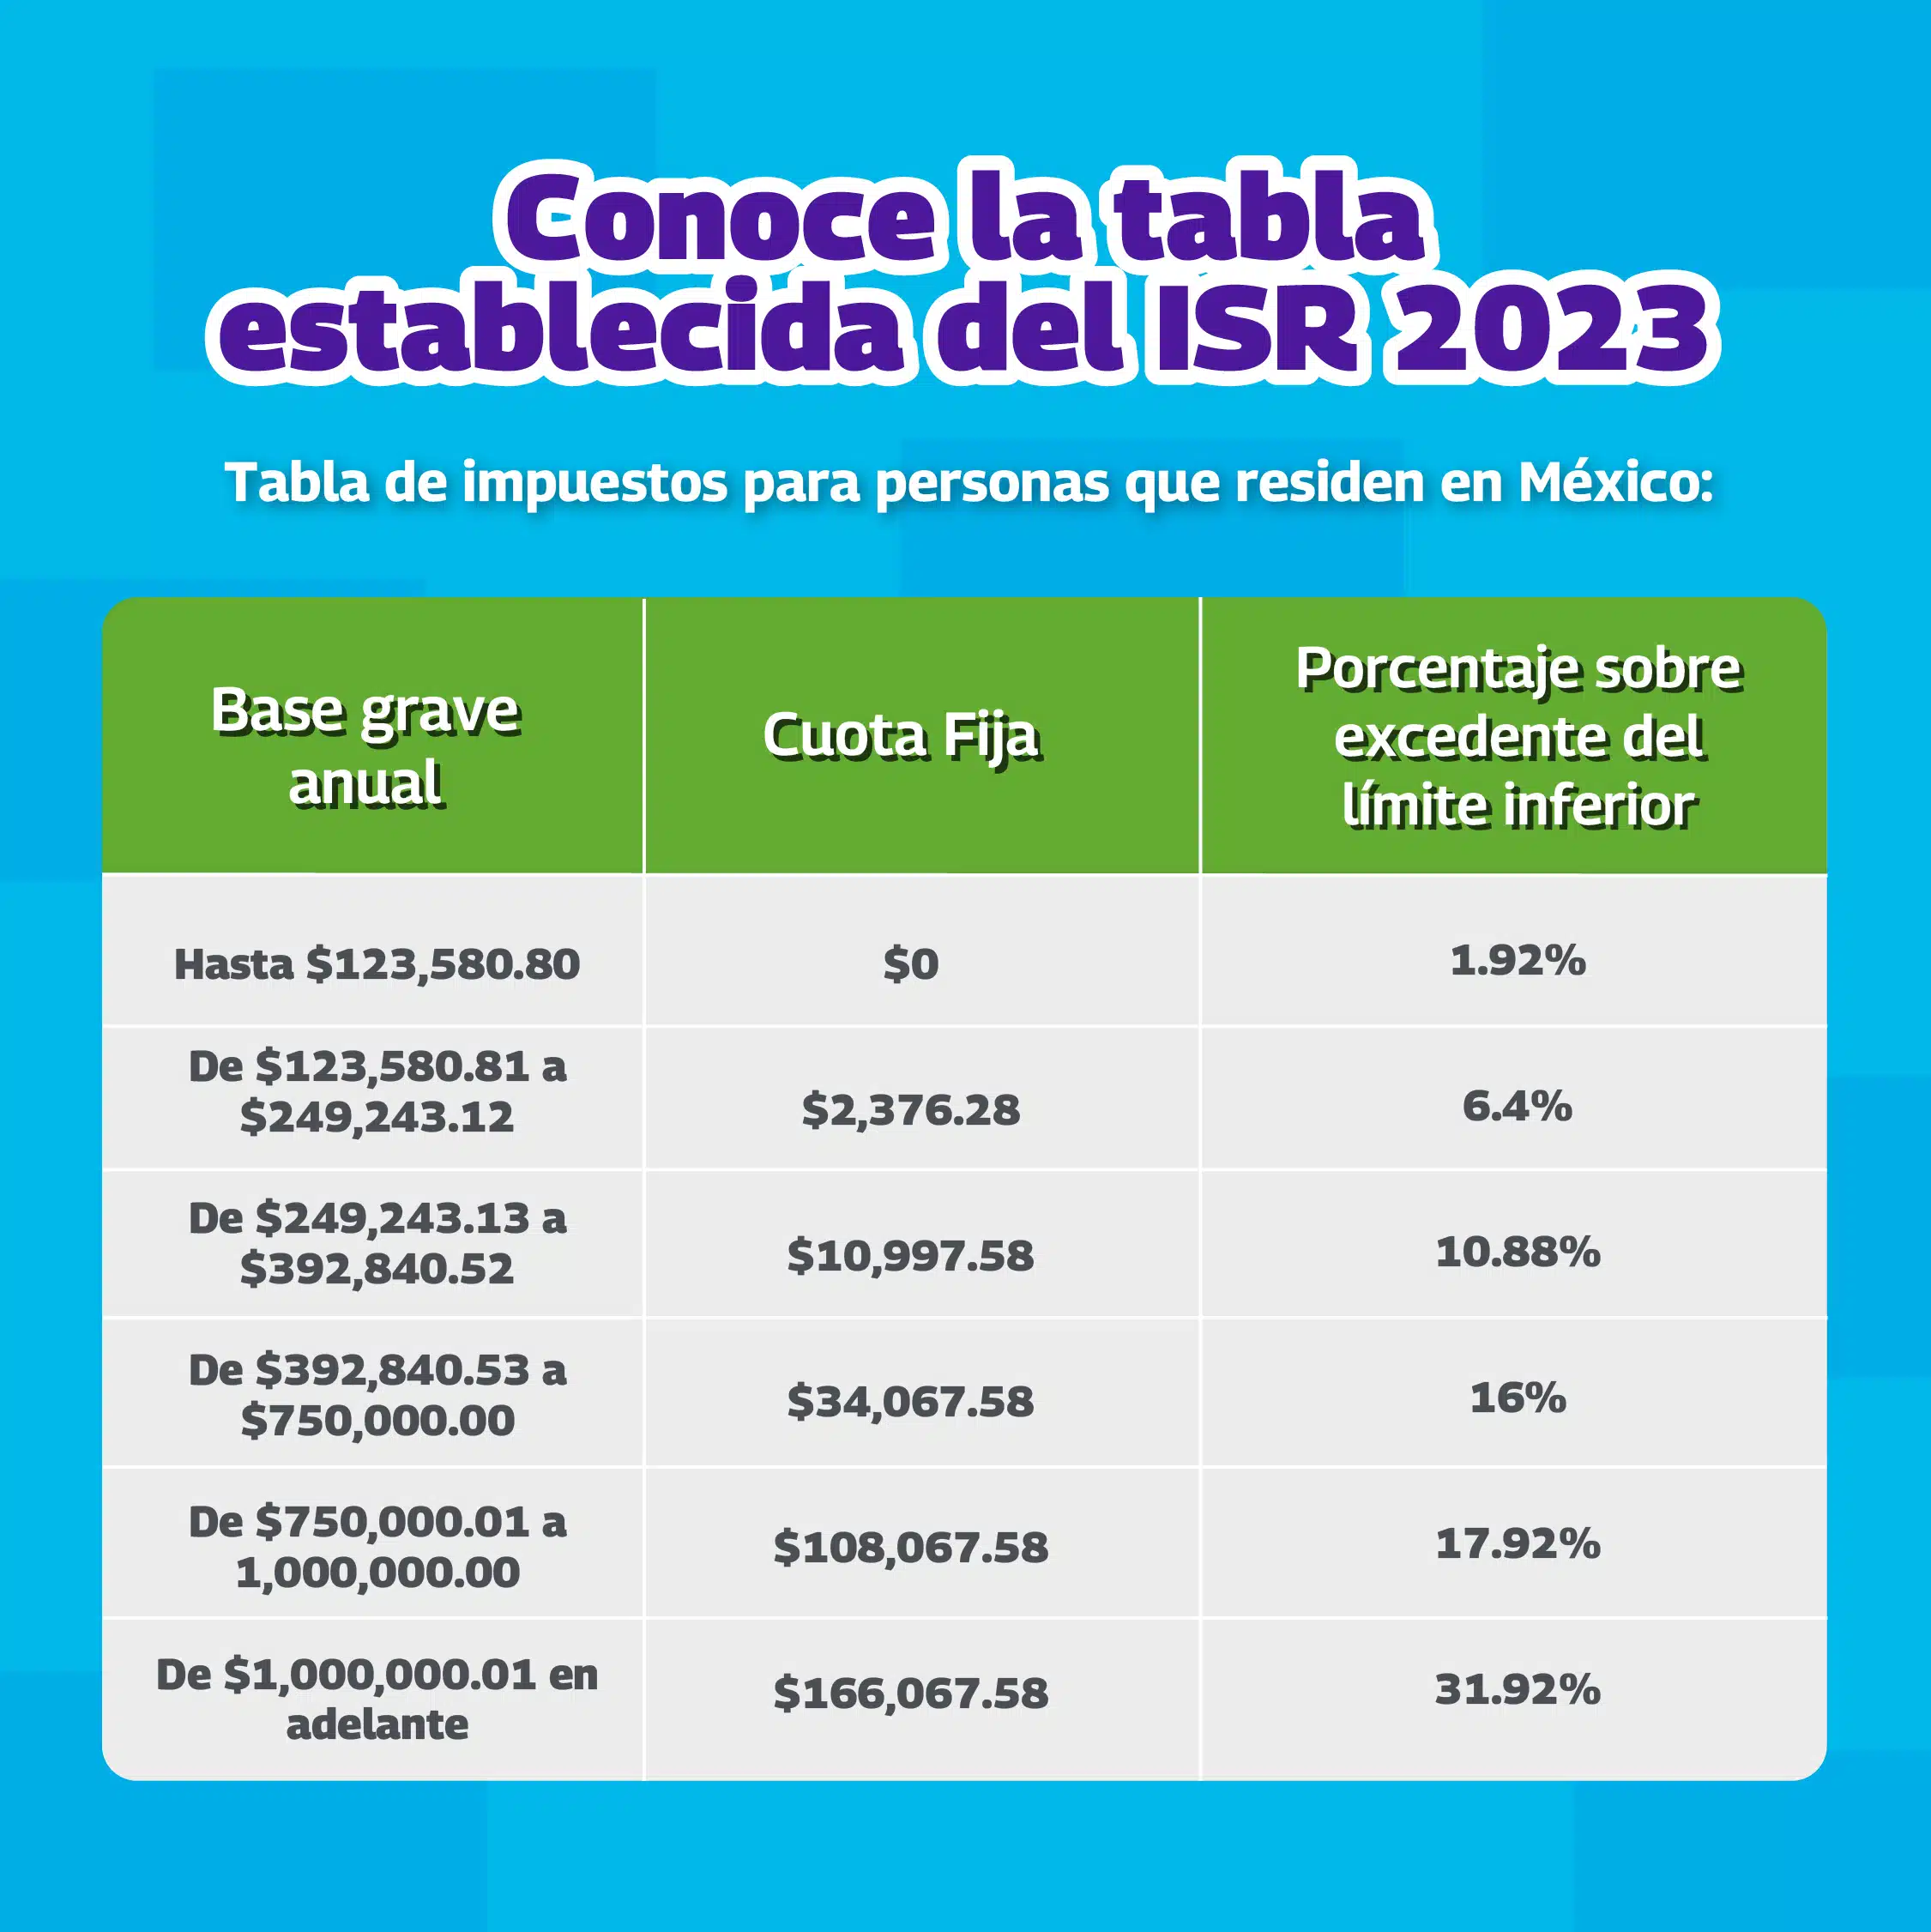 Toda persona que recibe ingresos en la República Mexicana debe pagar impuestos, aquí aprenderás a calcularlos con las tablas ISR.